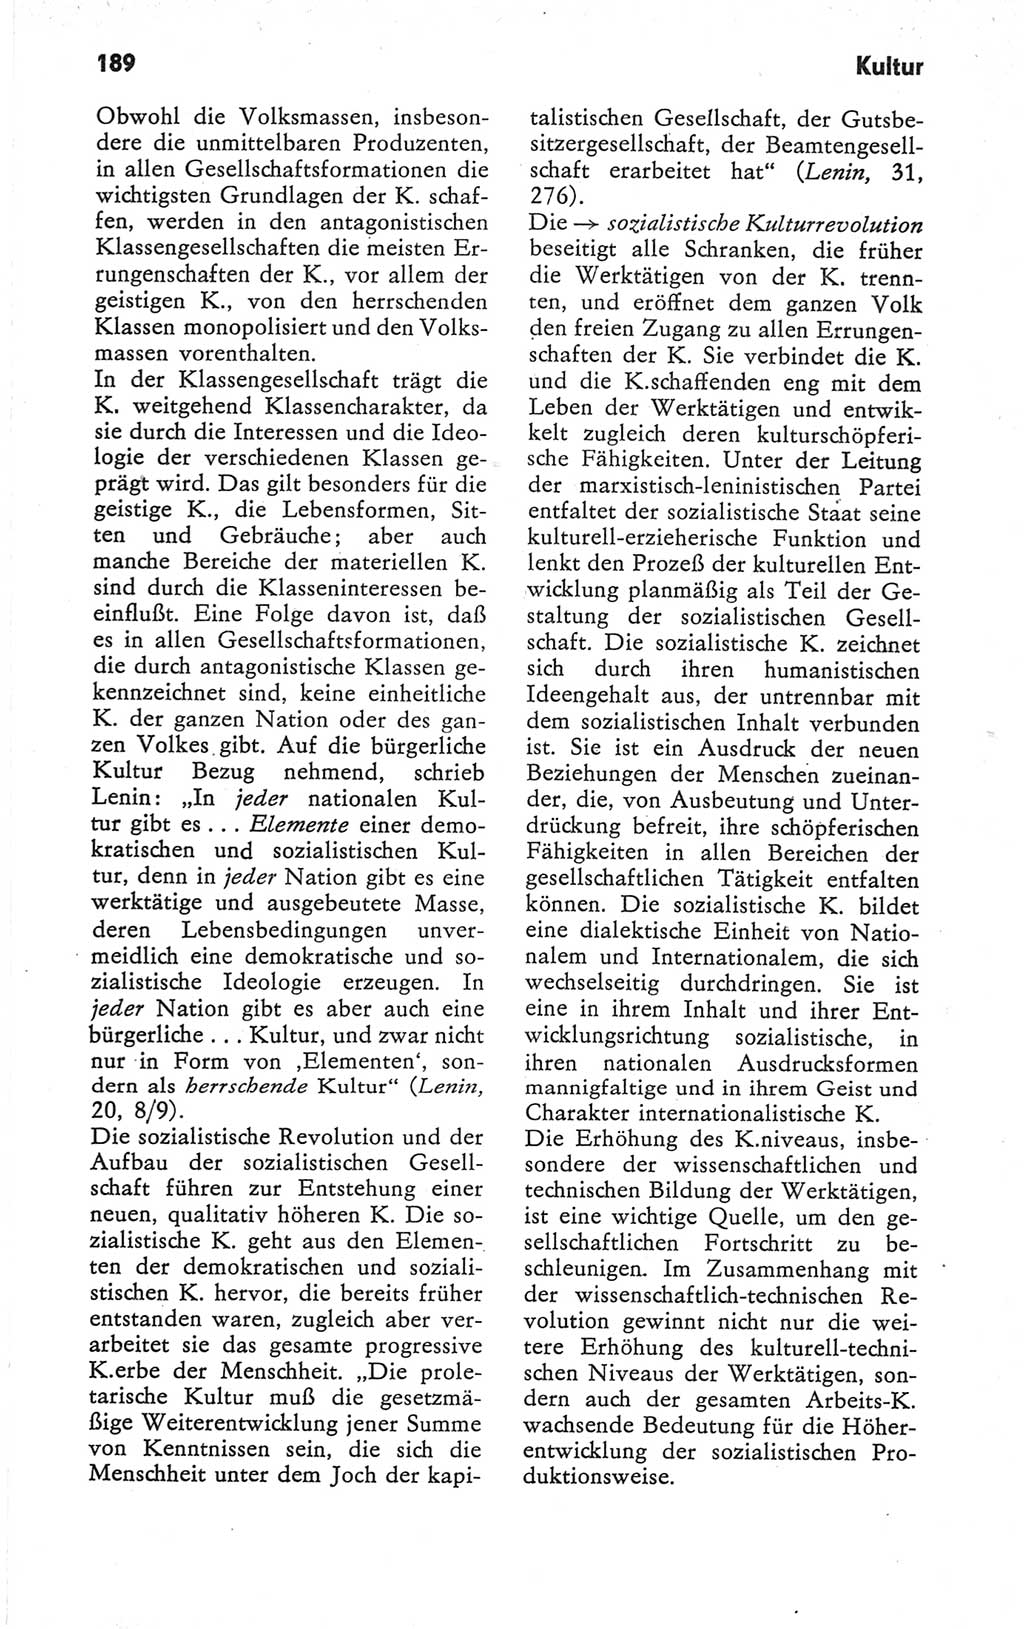 Kleines Wörterbuch der marxistisch-leninistischen Philosophie [Deutsche Demokratische Republik (DDR)] 1979, Seite 189 (Kl. Wb. ML Phil. DDR 1979, S. 189)